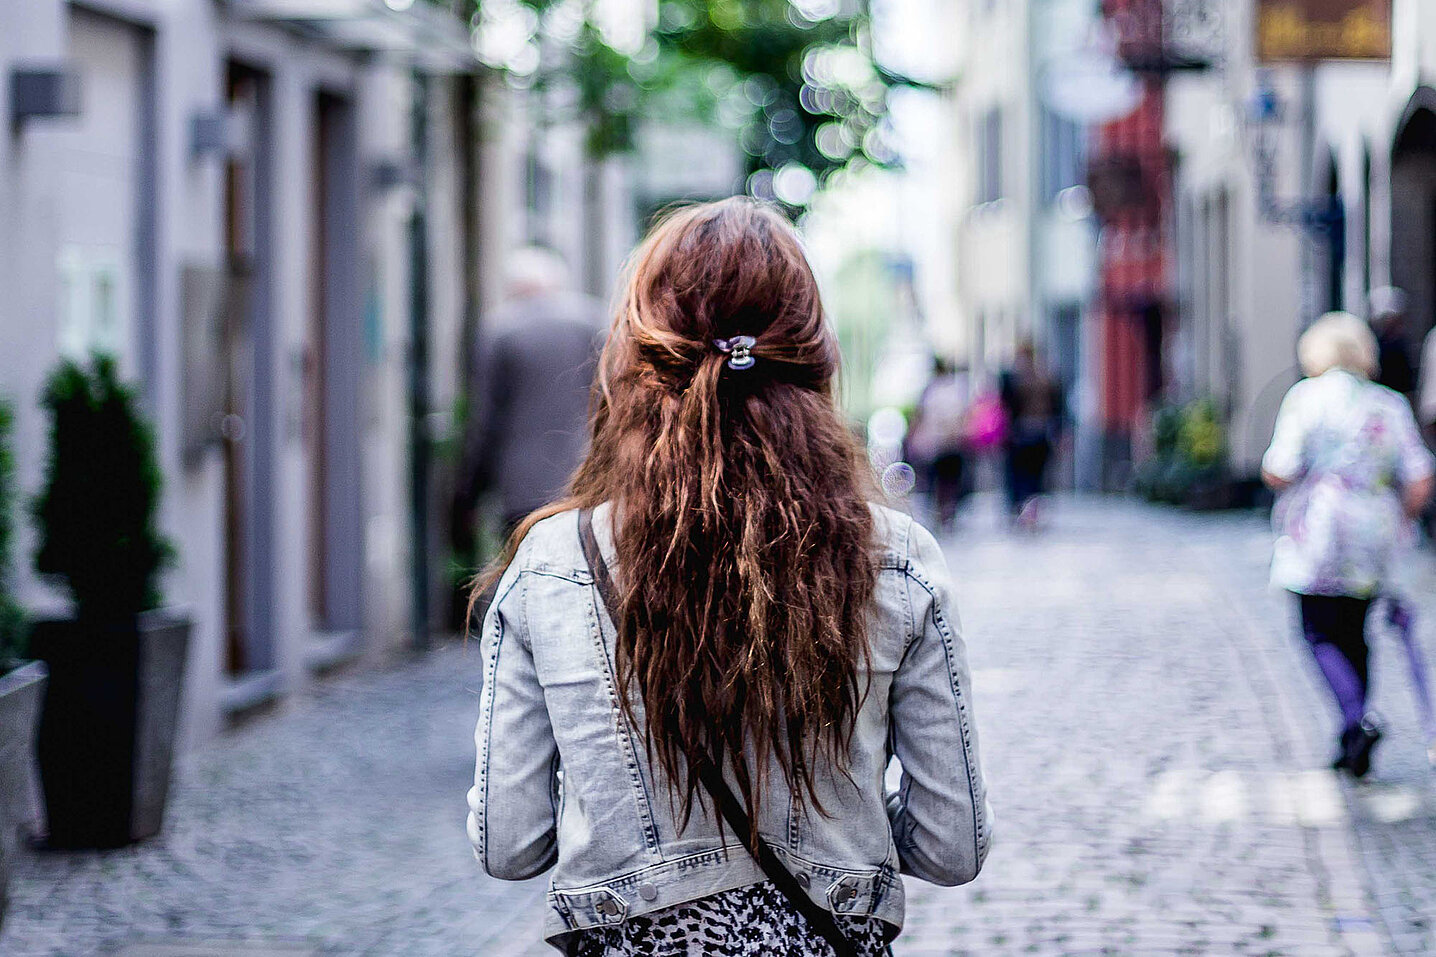 Une femme marche, de dos, dans une rue piétonne en ville.